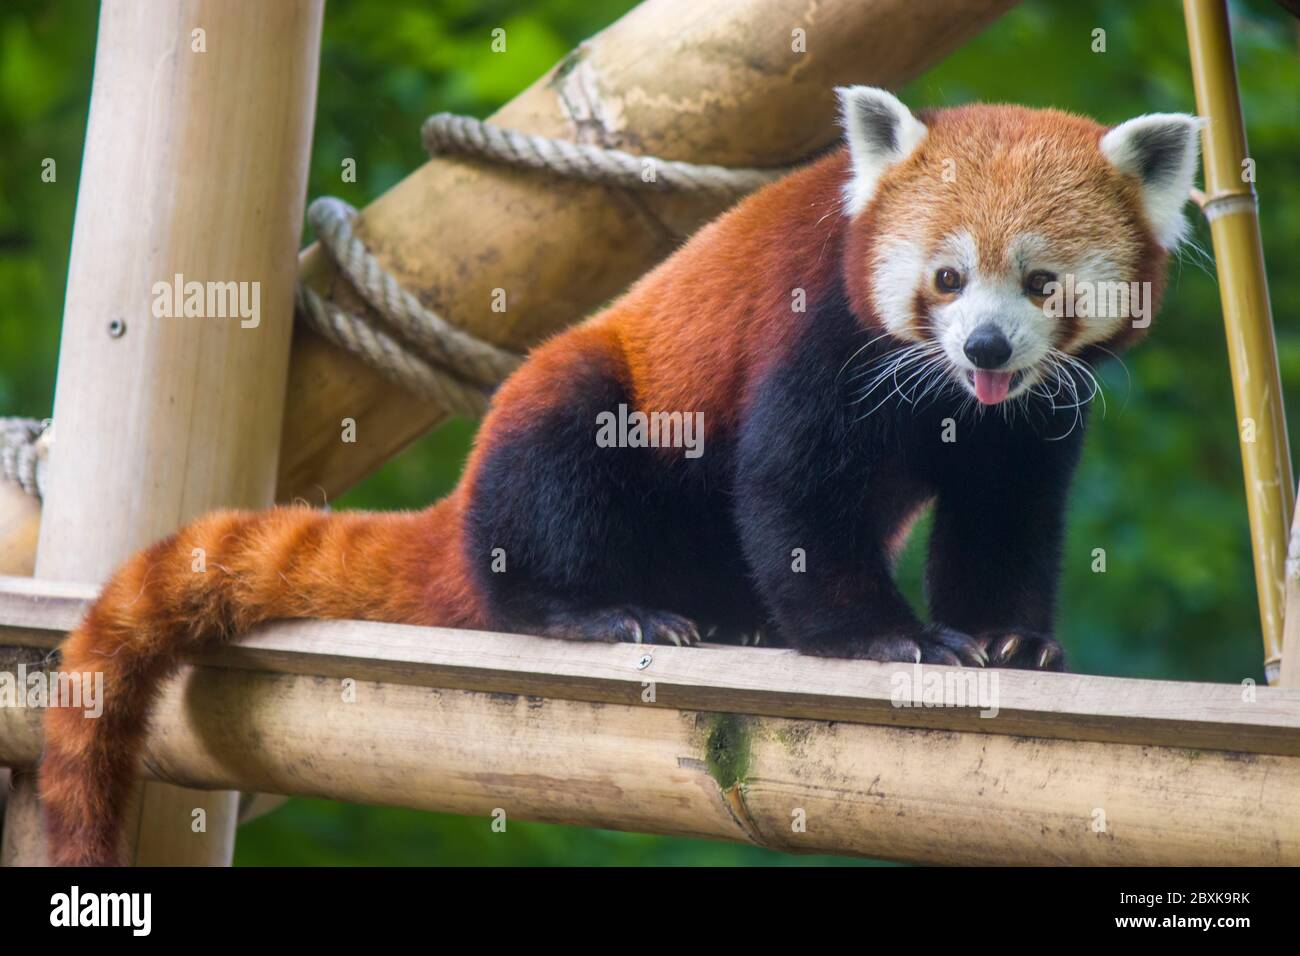 Le panda rouge est un mammifère originaire de l'est de l'Himalaya et du sud-ouest de la Chine le panda rouge a une fourrure brun rougeâtre, une longue queue déchiquetée. Banque D'Images